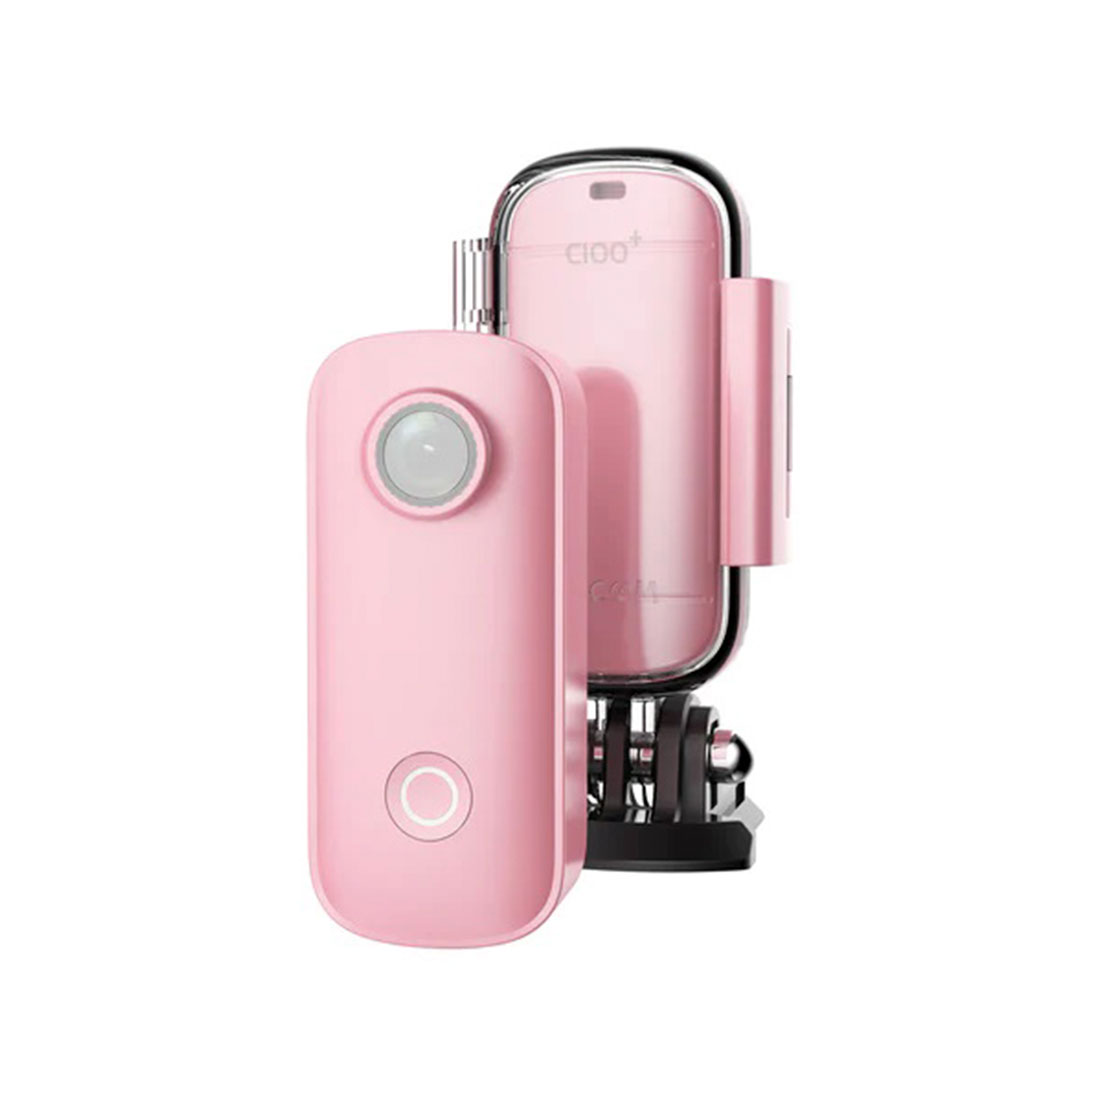 Экшн-камера, SJCAM, C100+ Pink, 1080p, 4K/30fps, MicroSD до 128 Гб, Процессор NT96675, Фото 15 МП, W